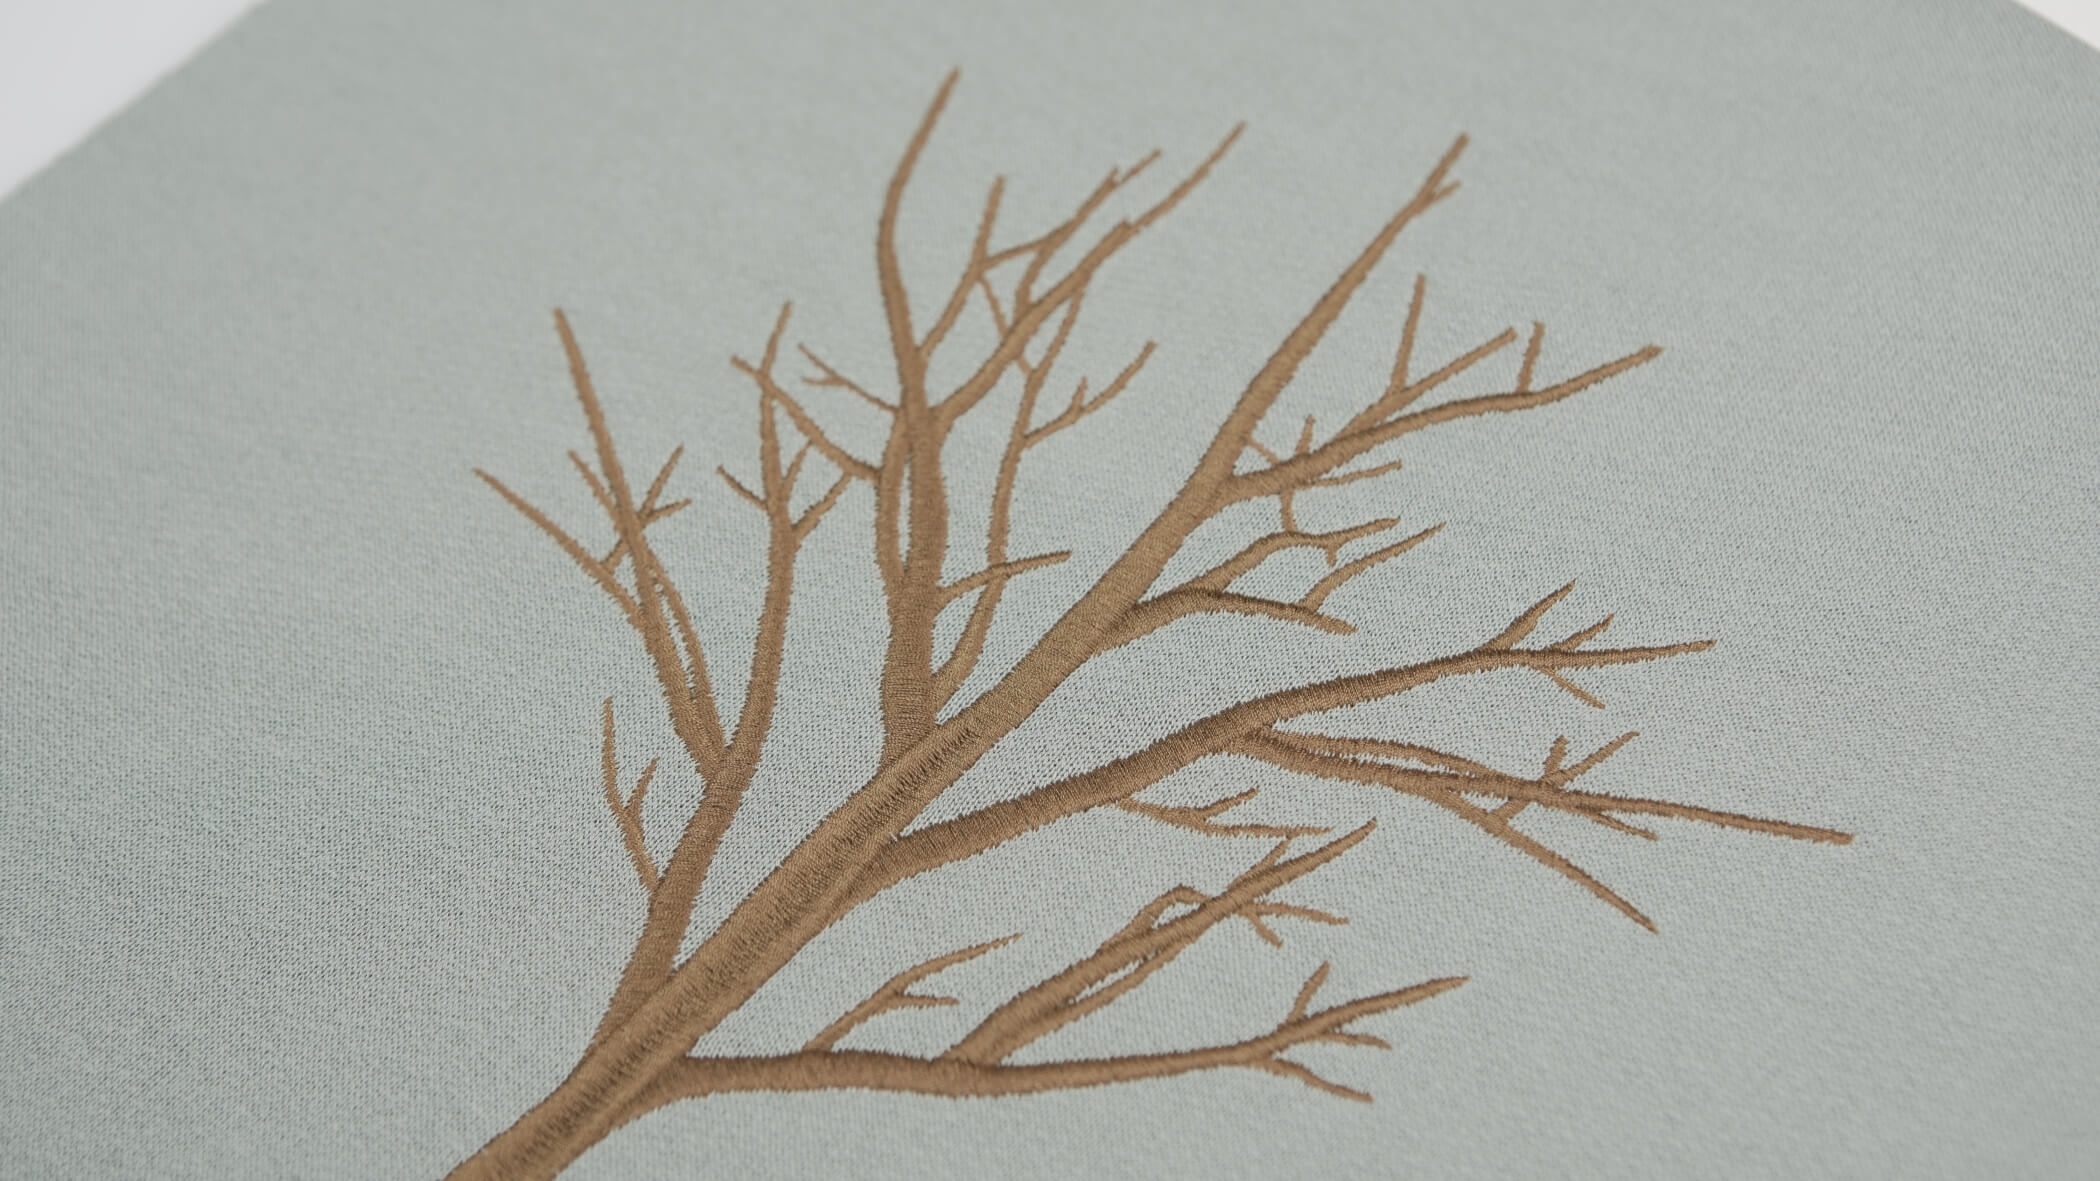 ramos de árvore sem folhas, com a cor castanha, criada através da técnica de bordado normal